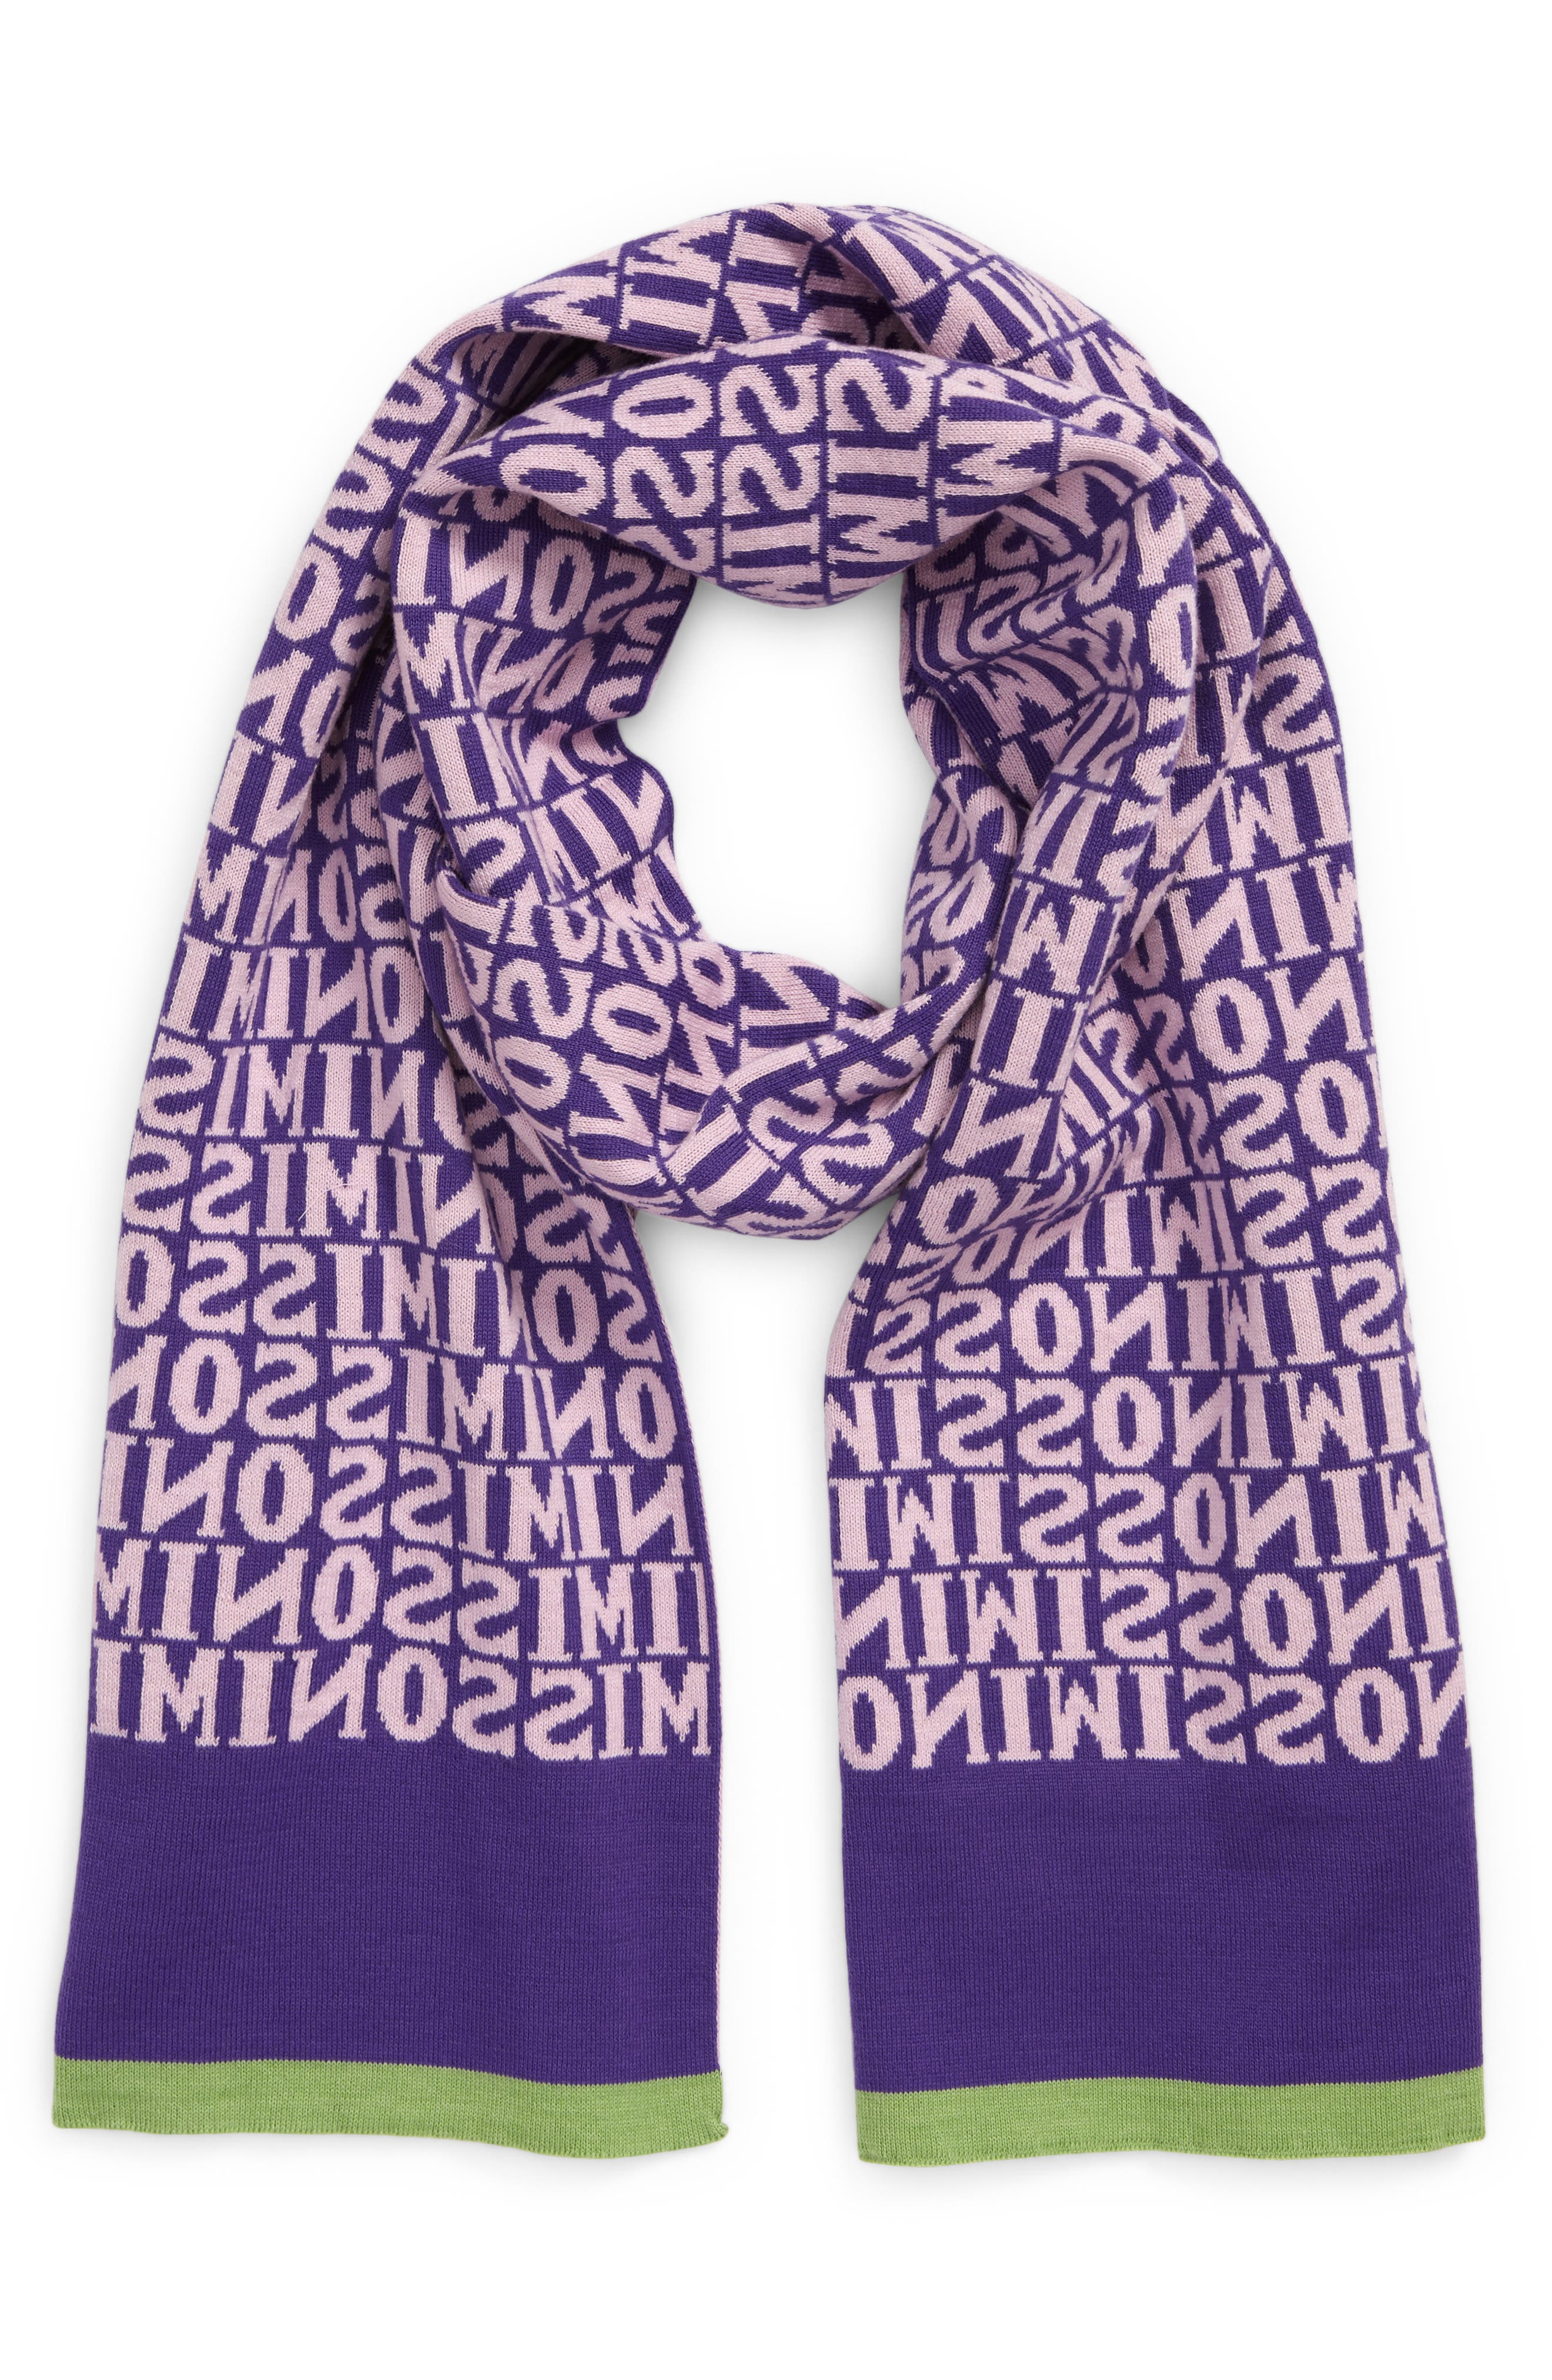 Purple slate tweed scarf  handmade scarf  merino wool scarf  winter scarf  man's scarf  woman's scarf